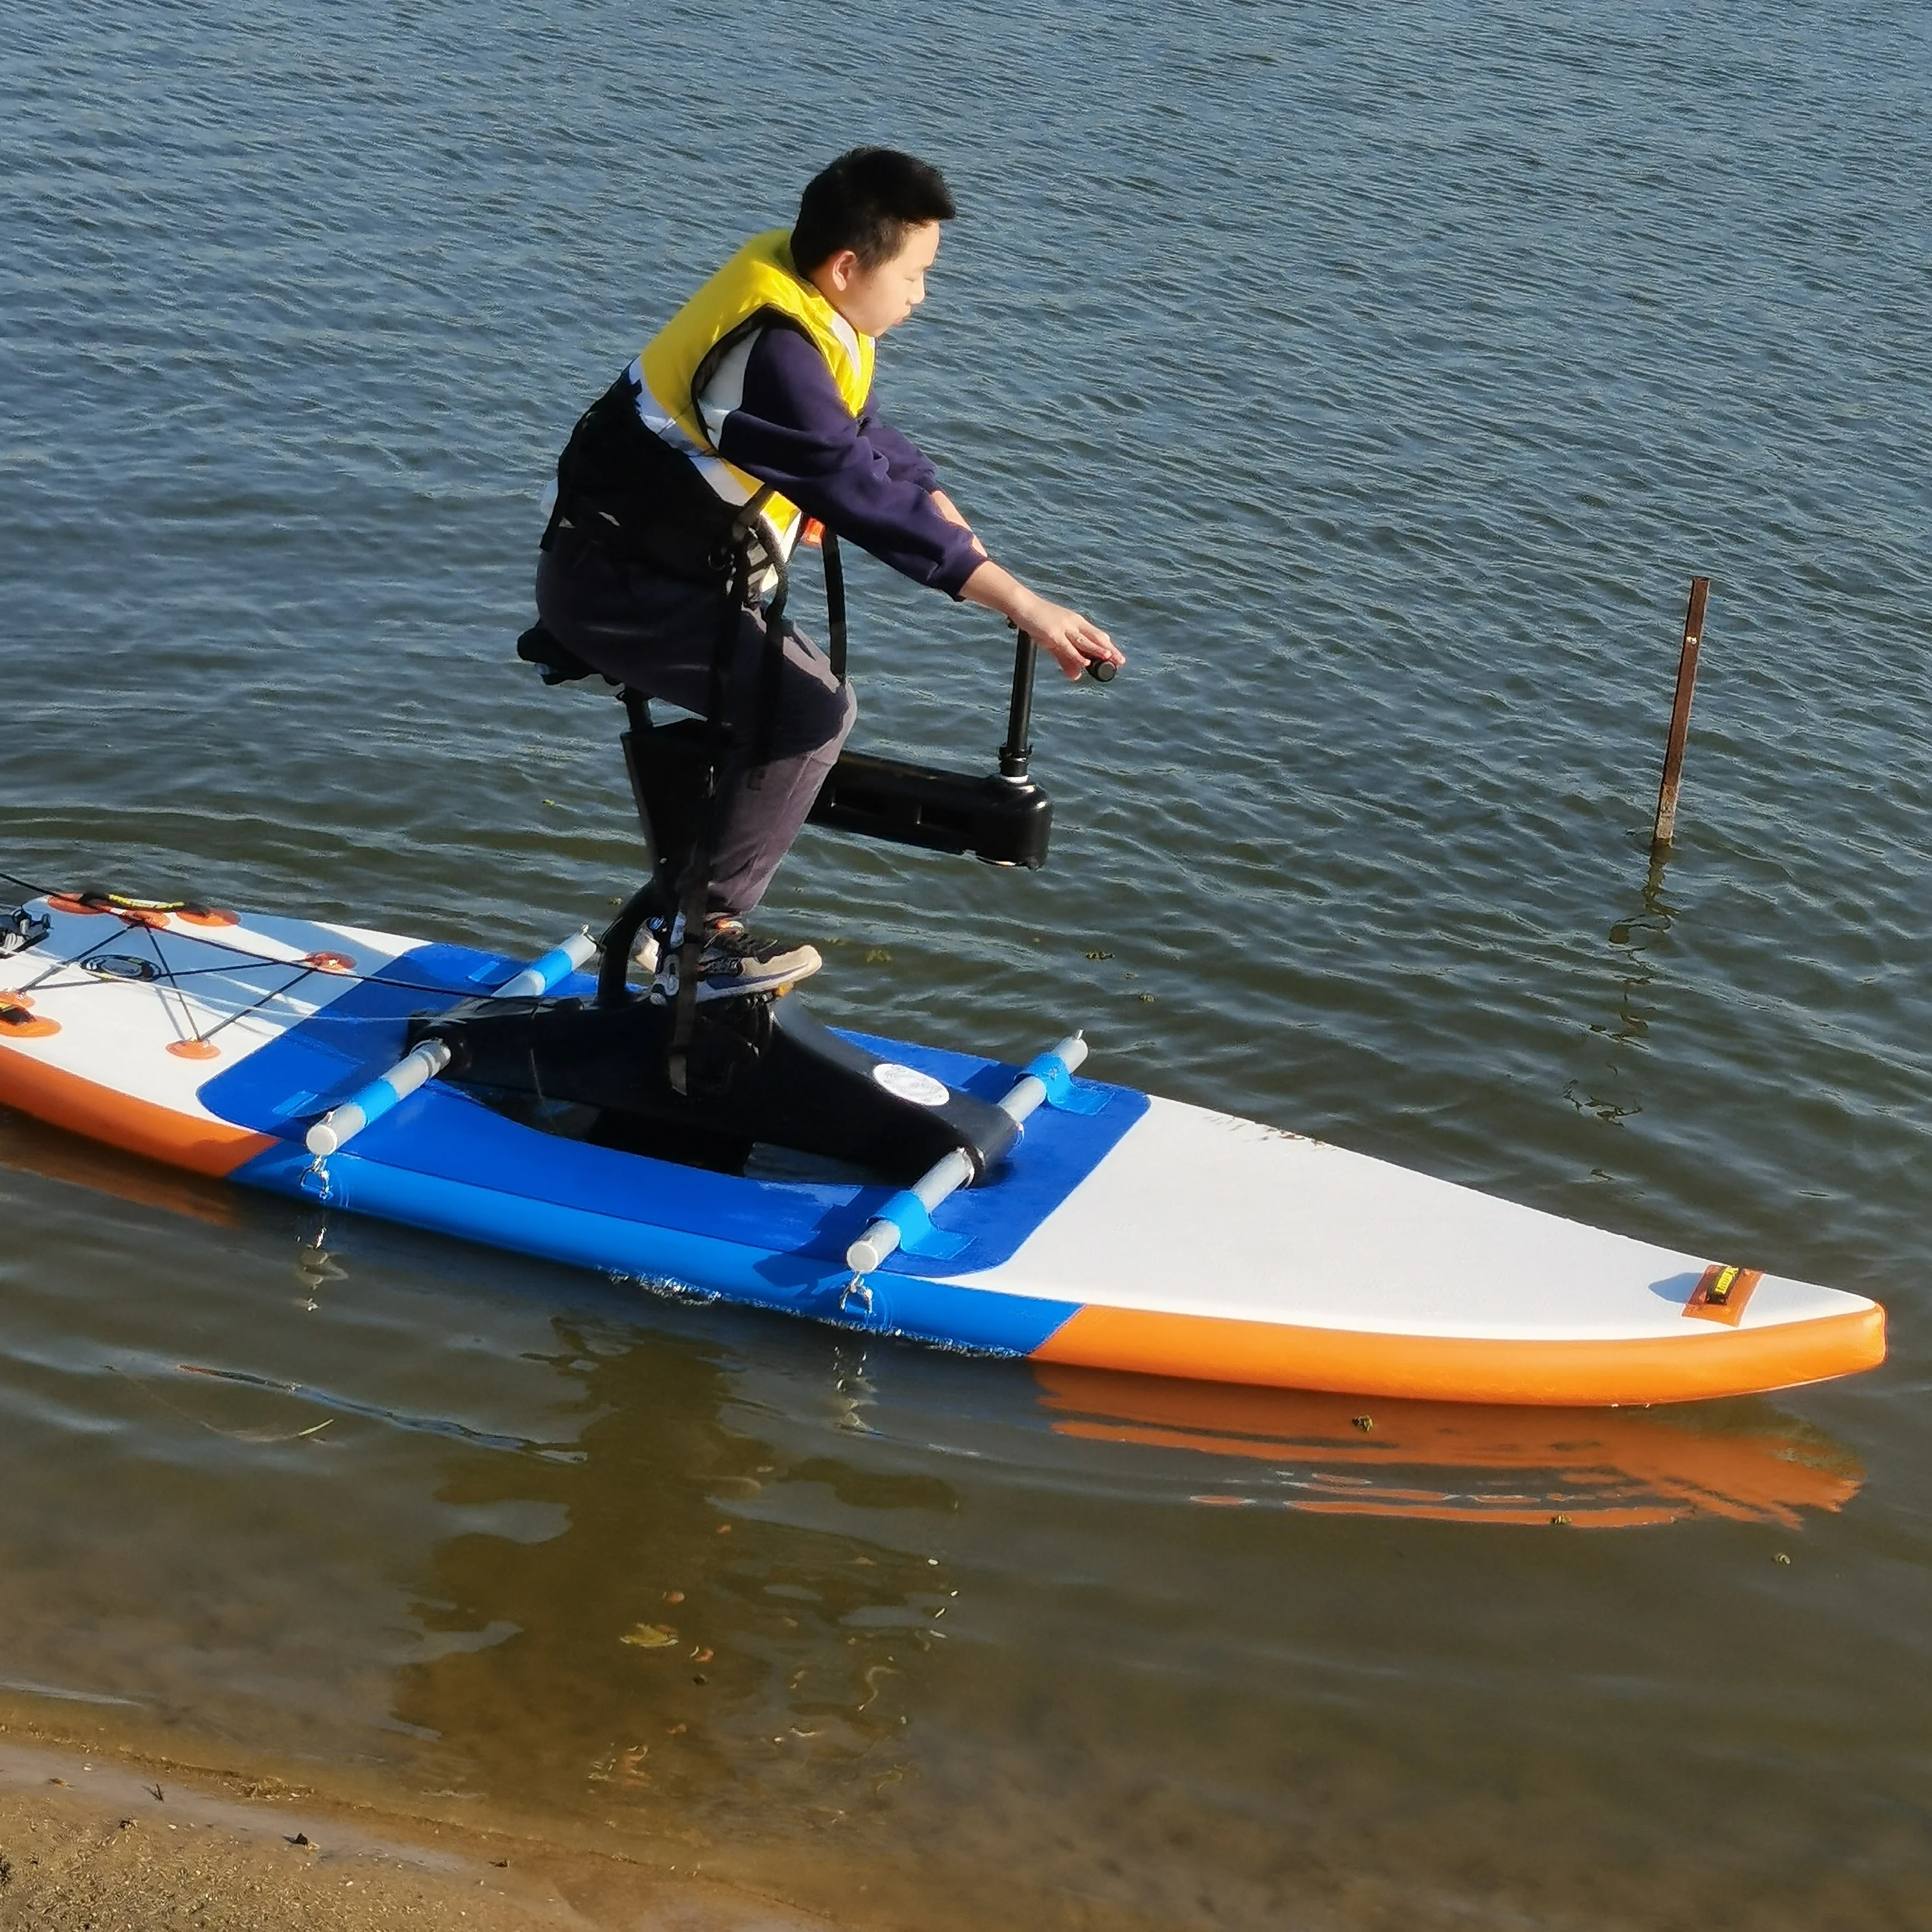 Bicicletta galleggiante regolabile in altezza commerciale della bici dell'acqua del parco acquatico di divertimento di nuovo arrivo